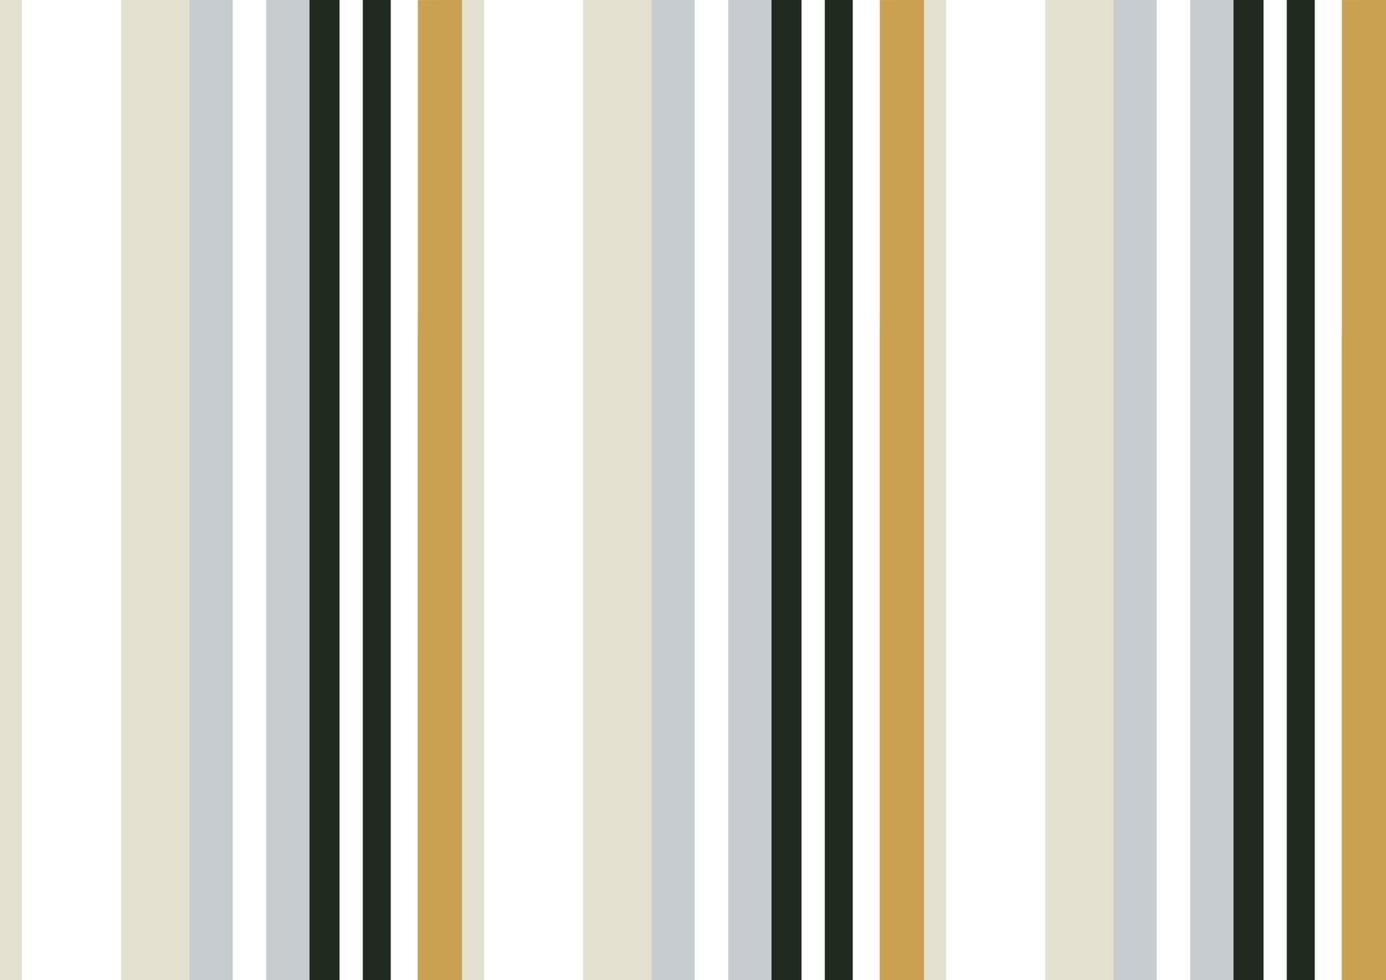 O tecido sem costura padrão de listras aradonis imprime listras relativamente largas, uniformes, geralmente verticais de cor sólida em um fundo mais claro. assemelha-se ao padrão em tecidos de toldo. vetor